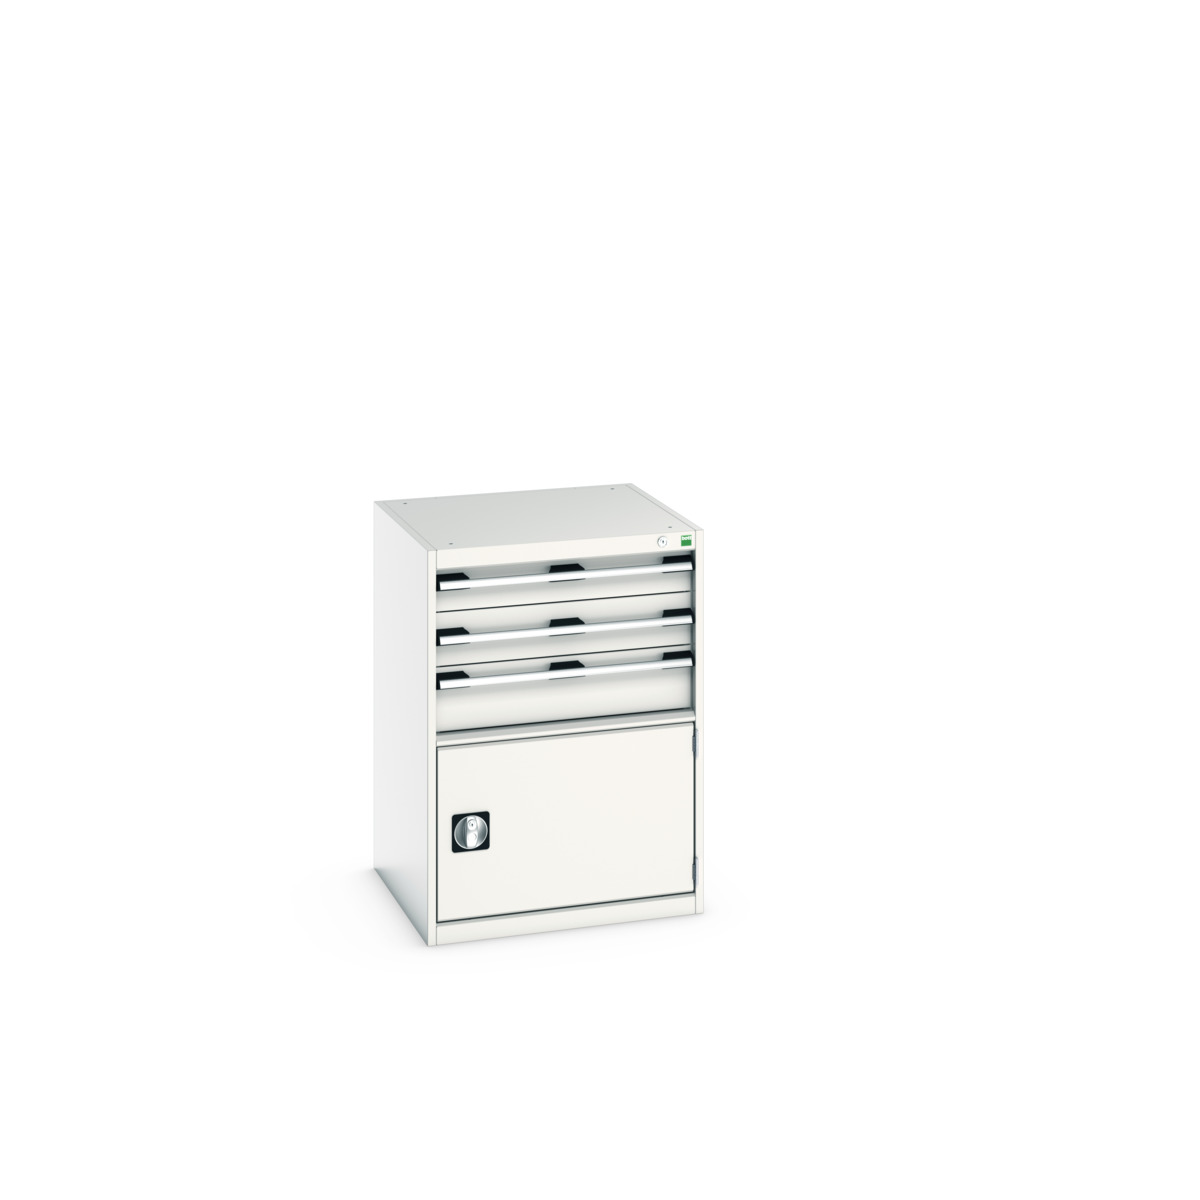 40019043.16V - cubio drawer-door cabinet